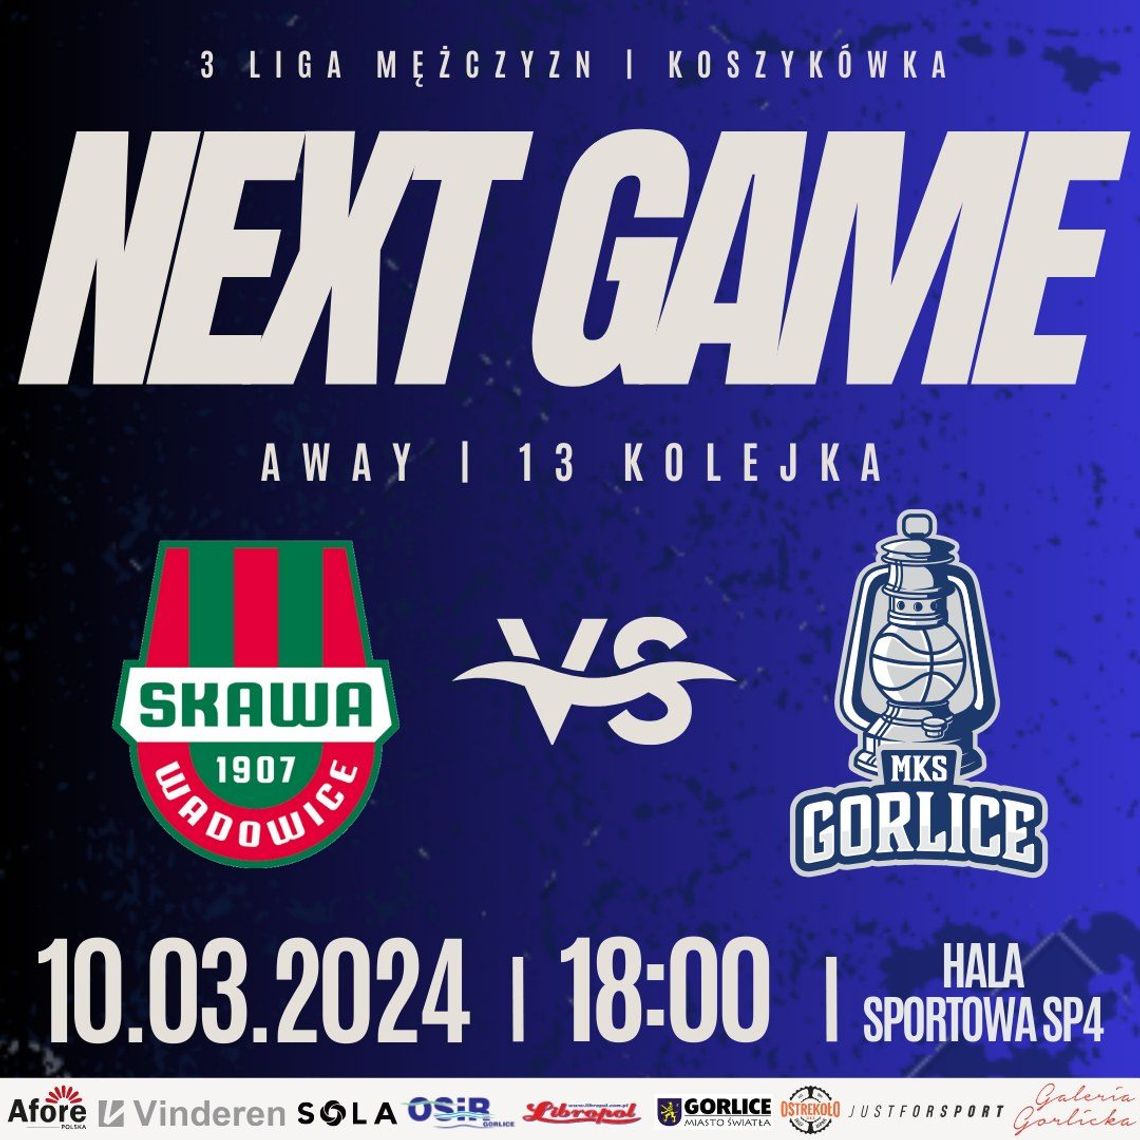 Koszykówka 3 liga mężczyzn Skawa Wadowice – MKS Gorlice | halogorlice.info